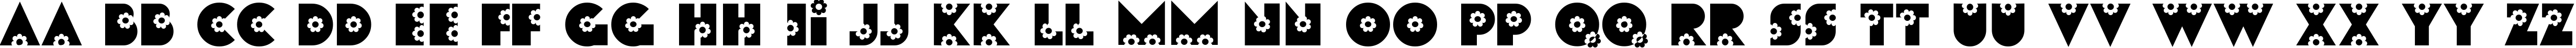 Пример написания английского алфавита шрифтом Flores